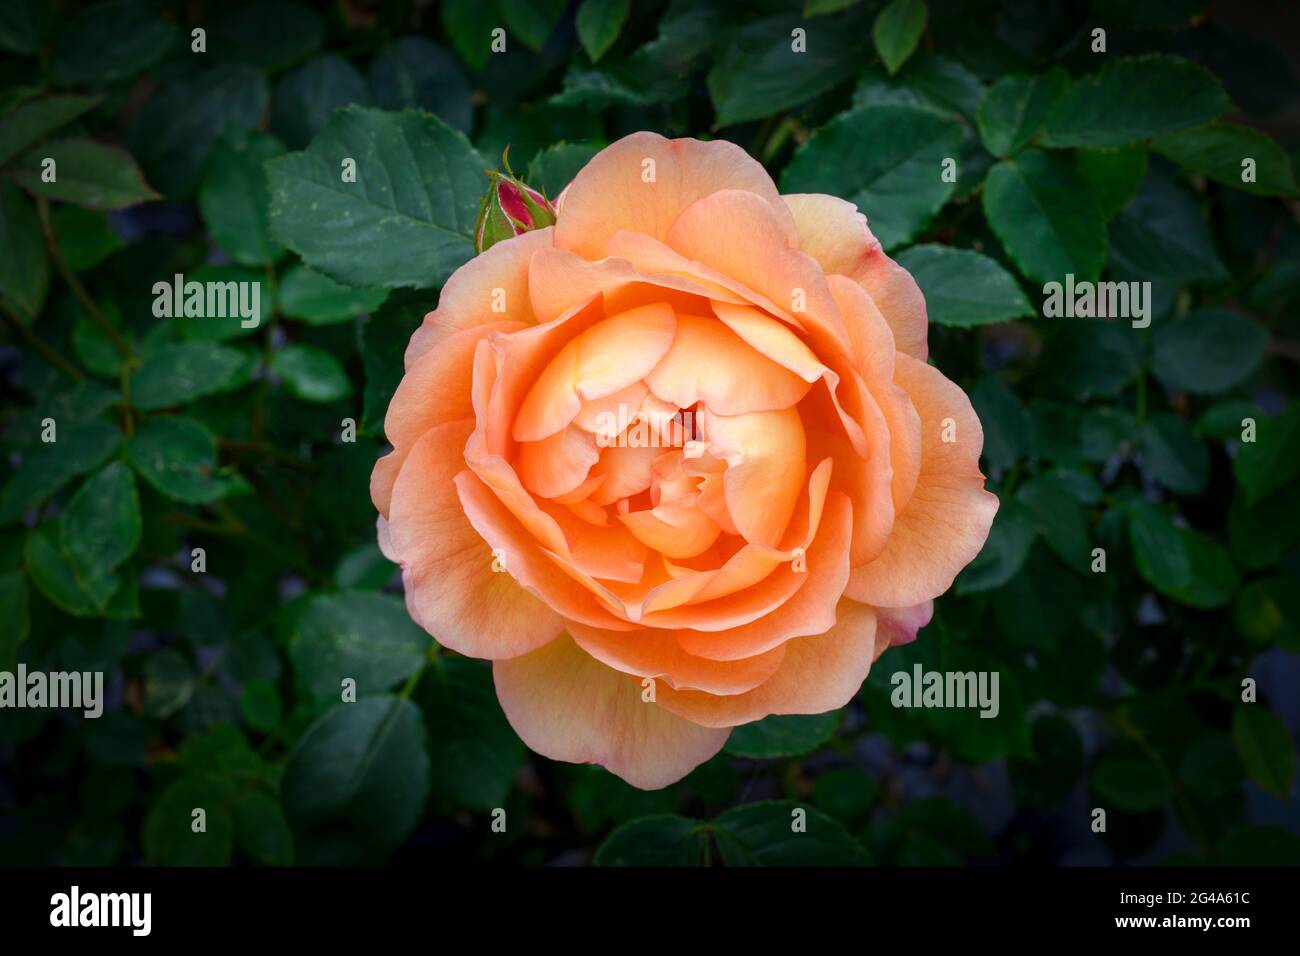 Large single orange rose flower in full bloom Stock Photo